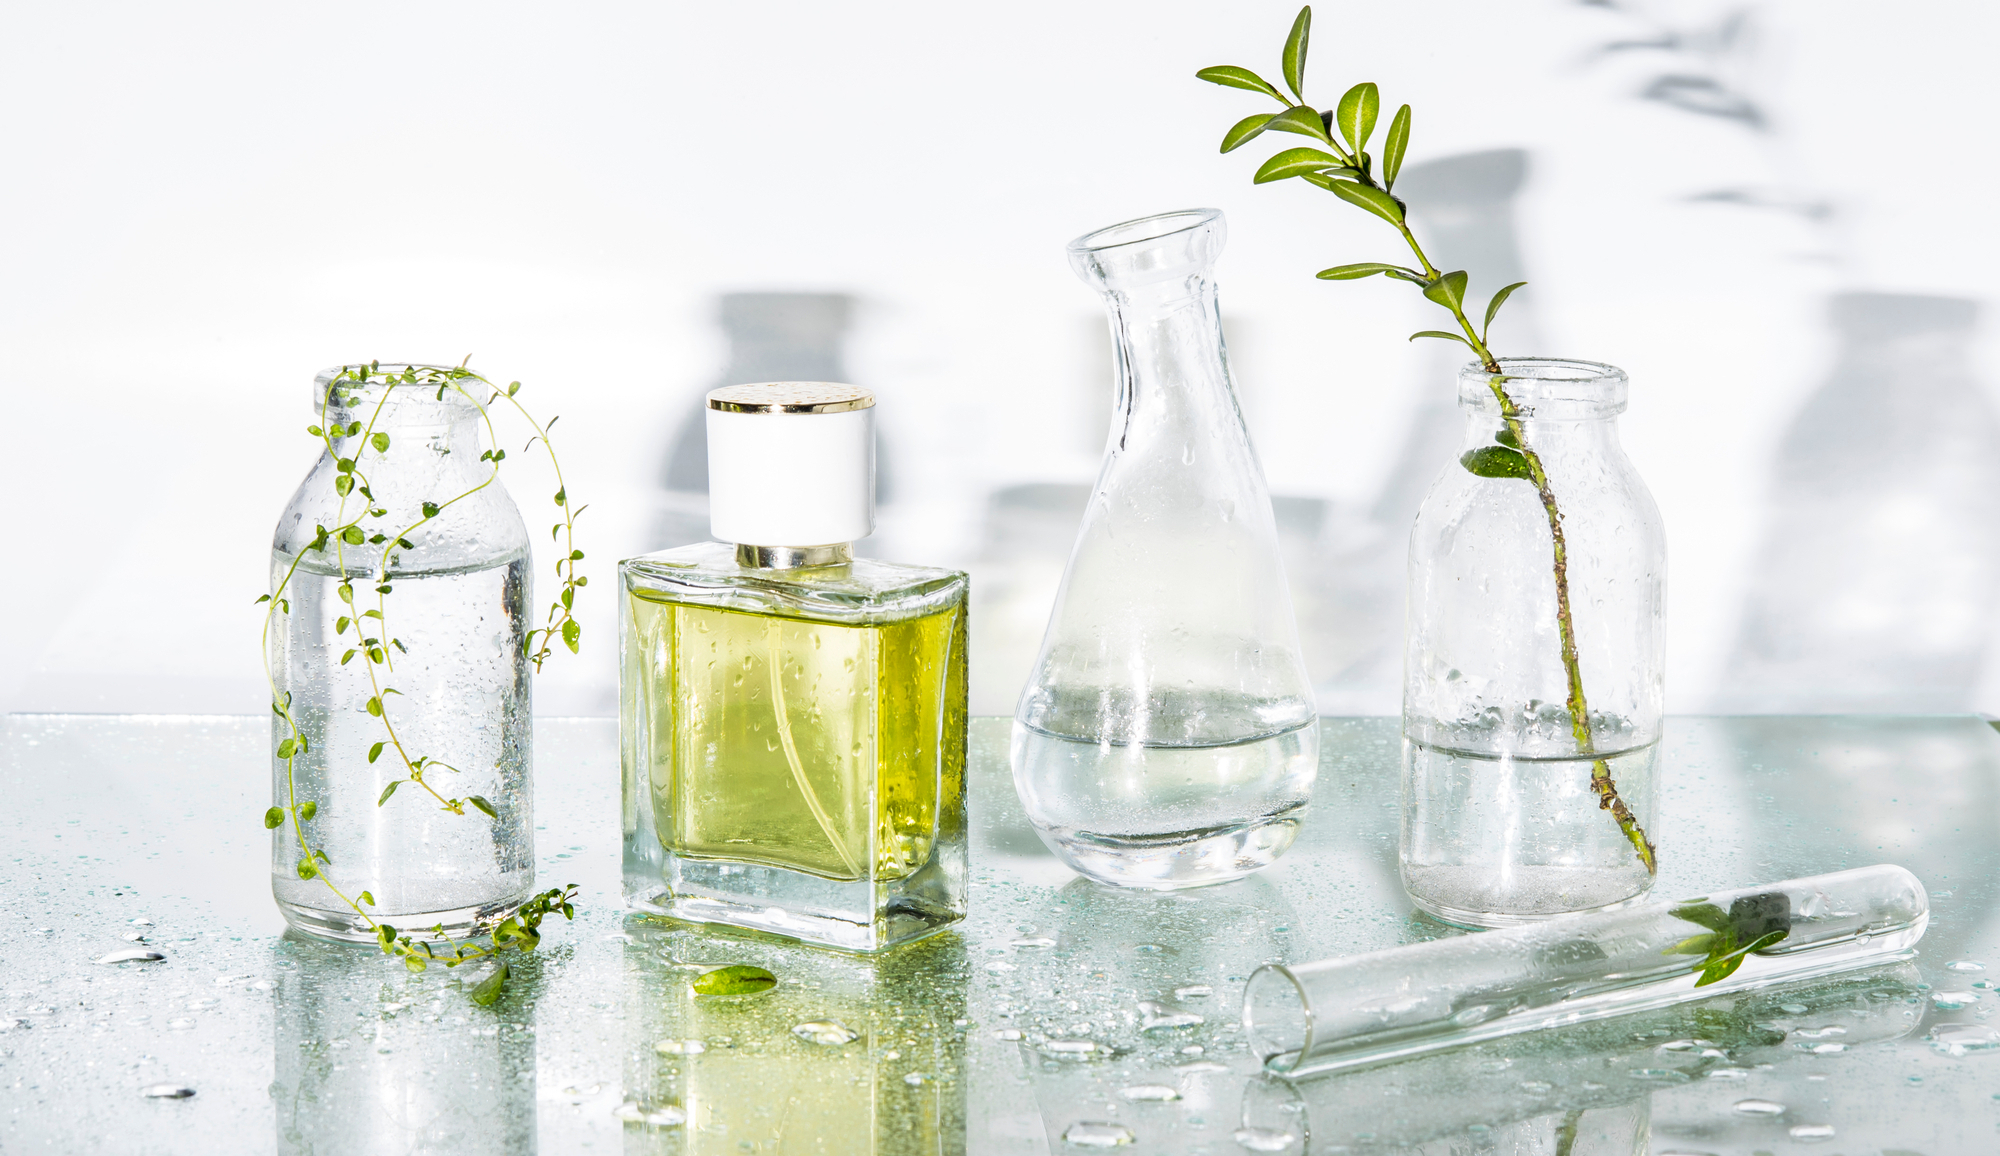 Read more: ¿Conoces las familias olfativas de los perfumes?